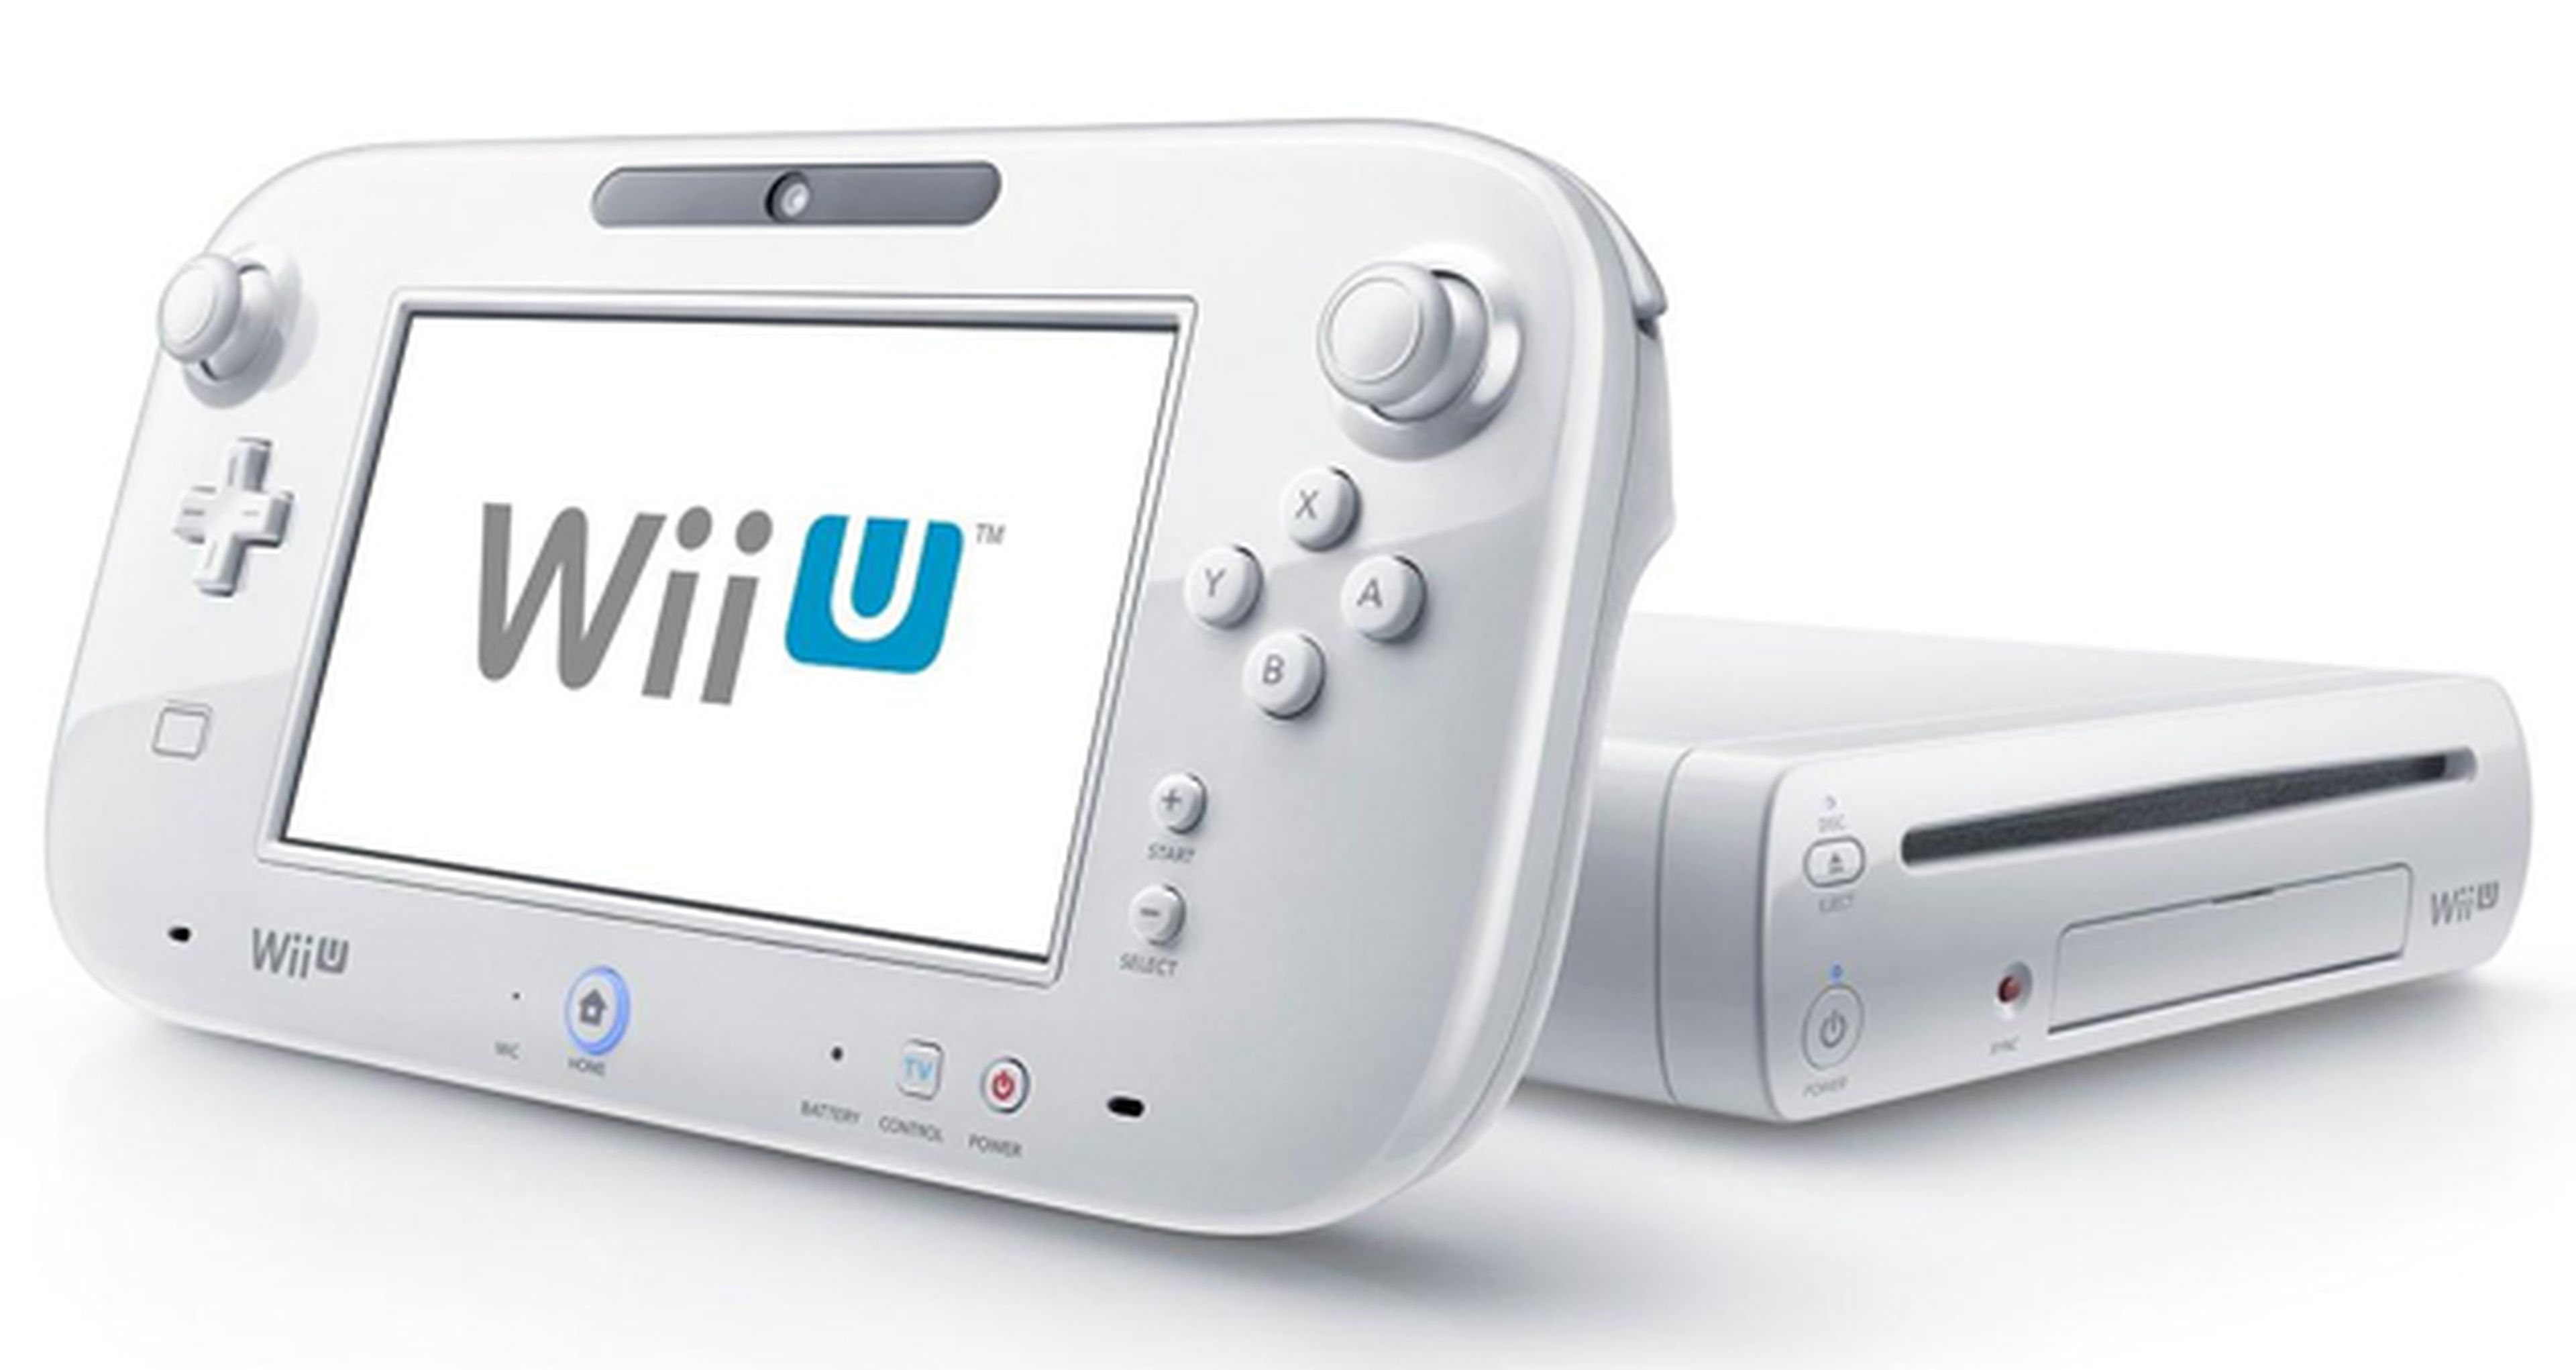 Know Your Friends, el juego que Ubisoft no lanzó para Wii U